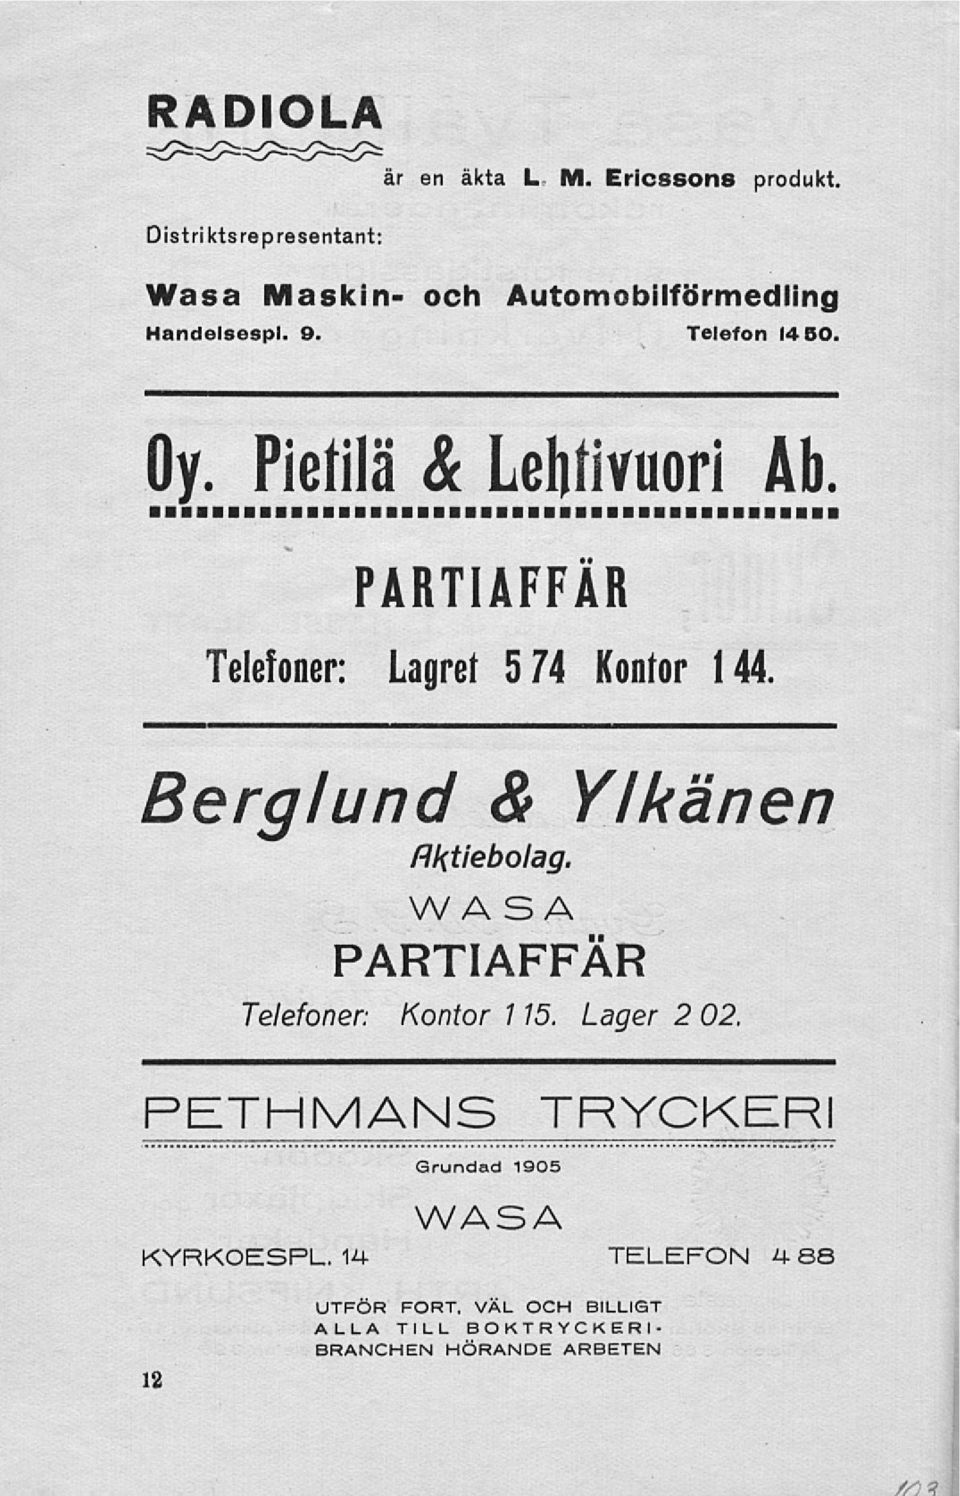 Telefon 14 50. PARTIAFFÄR Telefoner: Lagret 574 Kontor 144 Berglund & Ylkan en Aktiebolag.